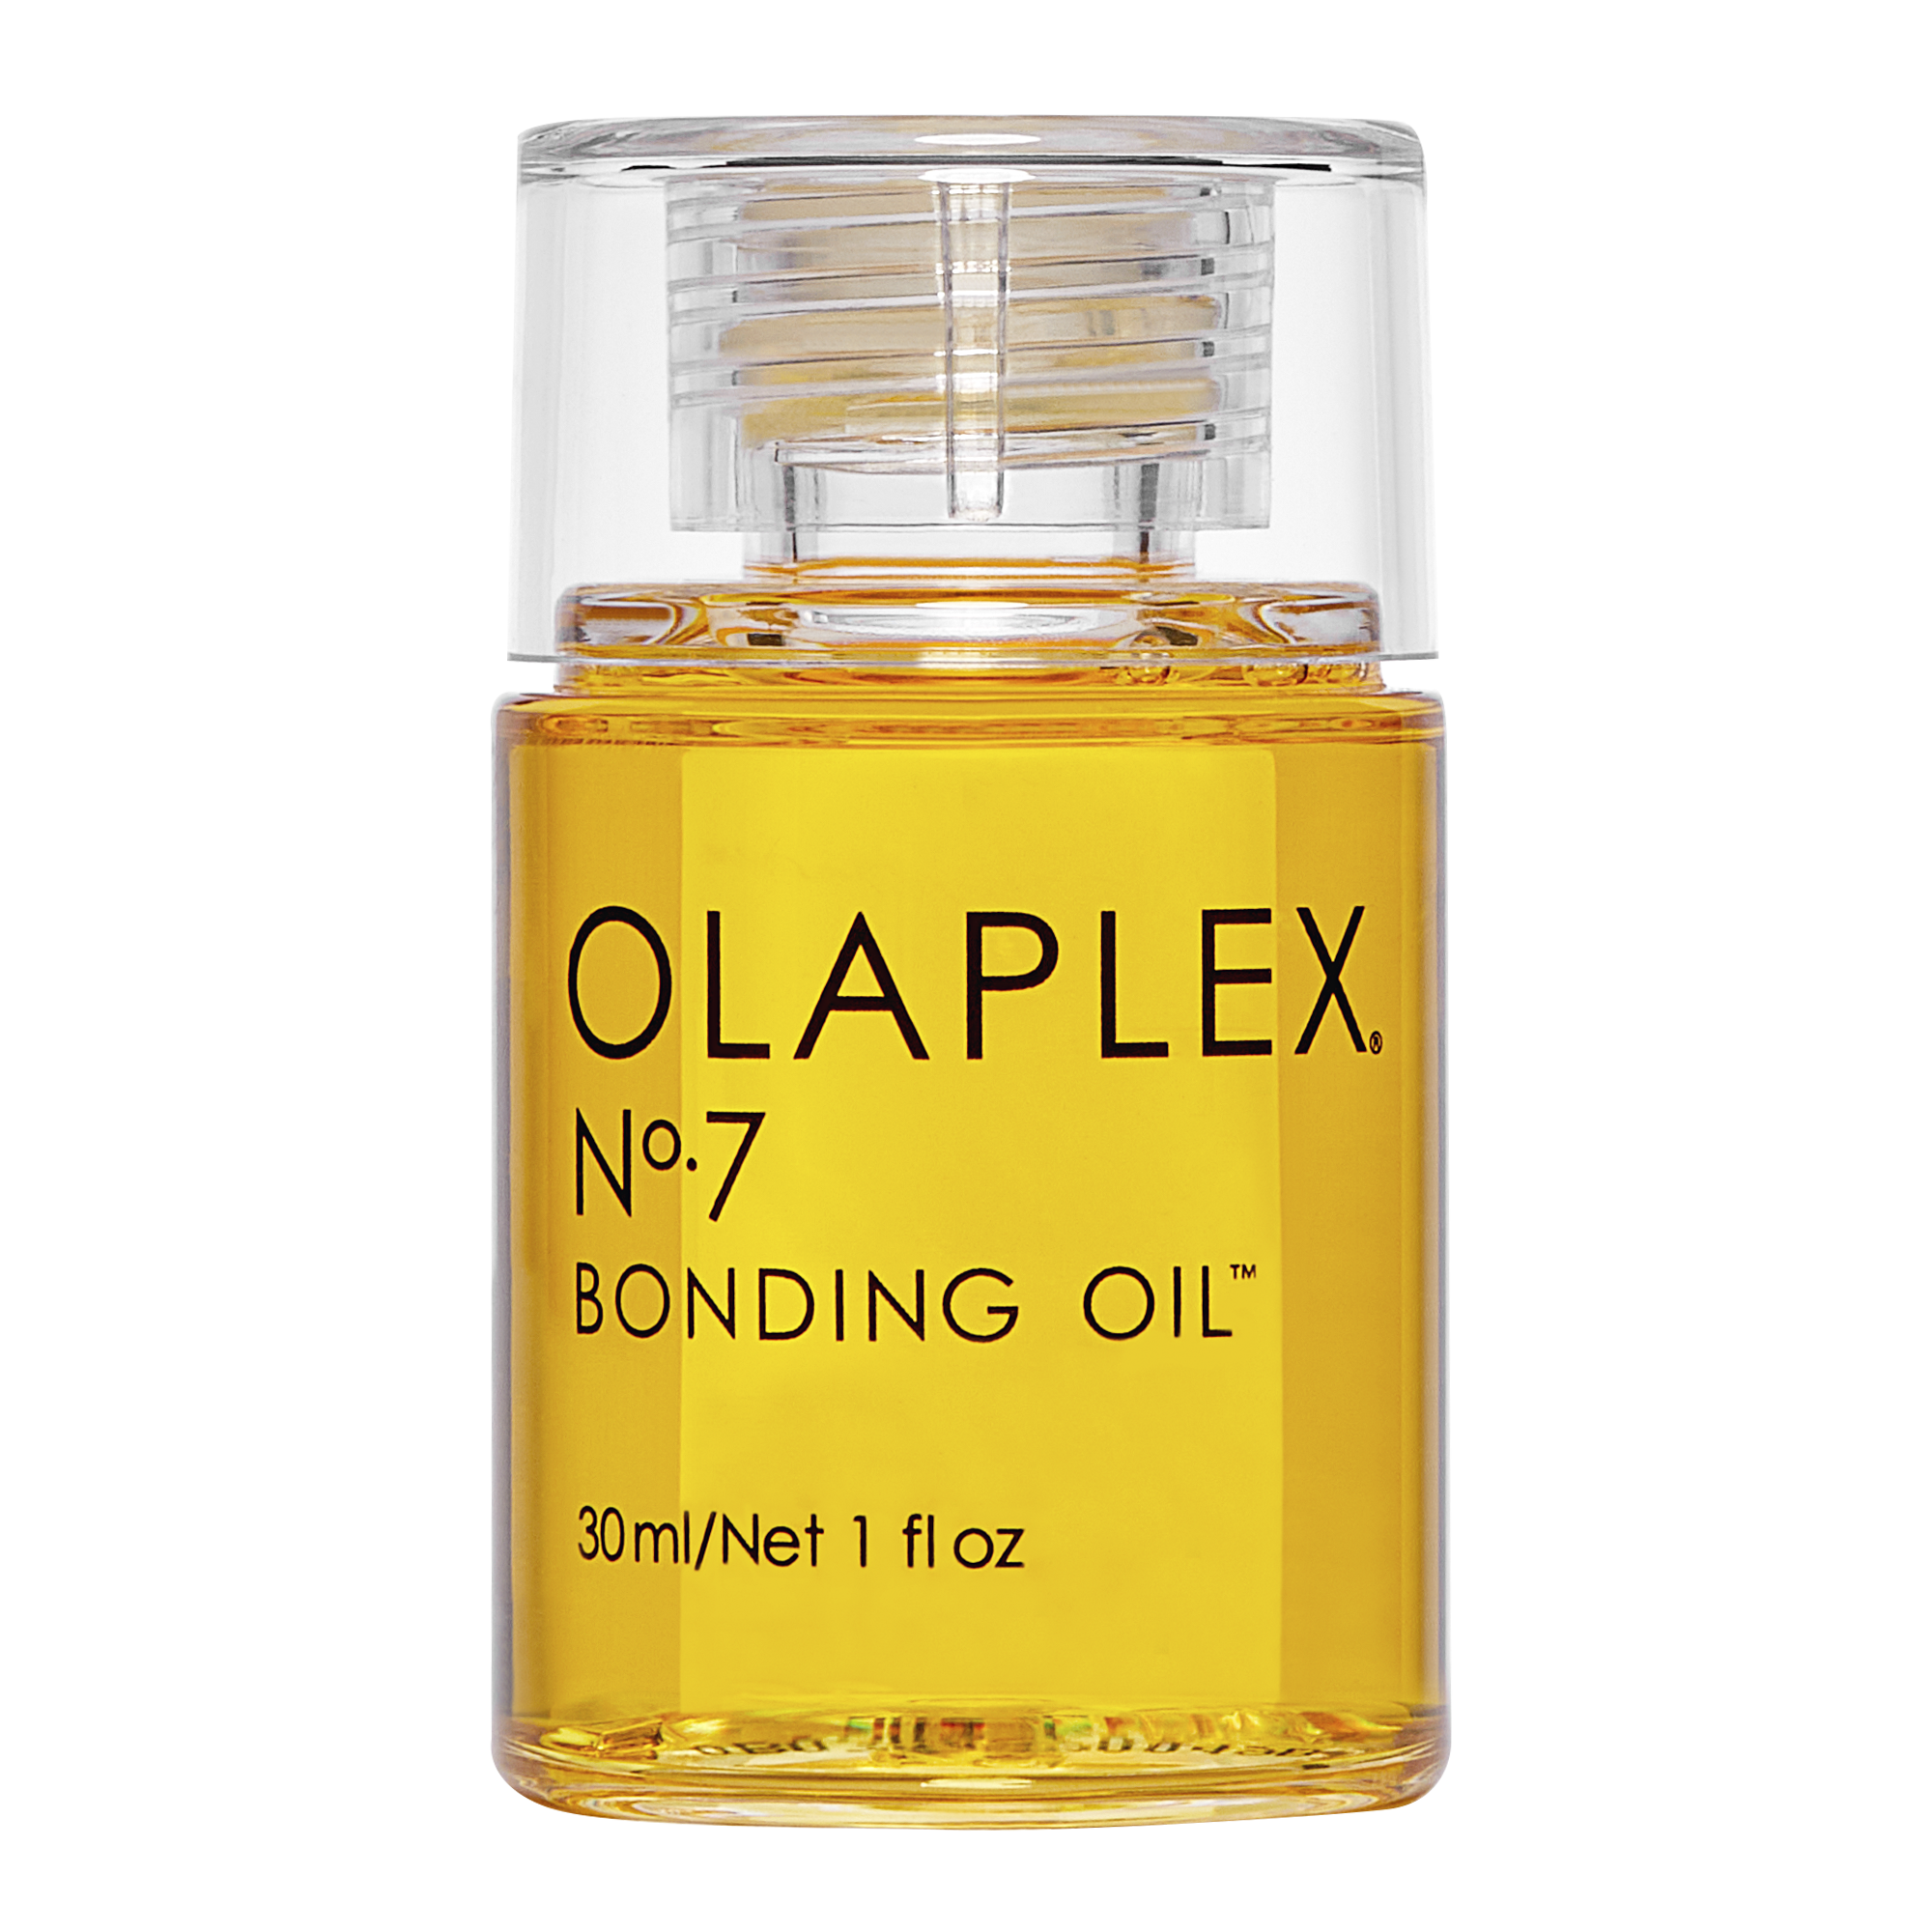 Original OLAPLEX® N°7 Bonding Oil grid image